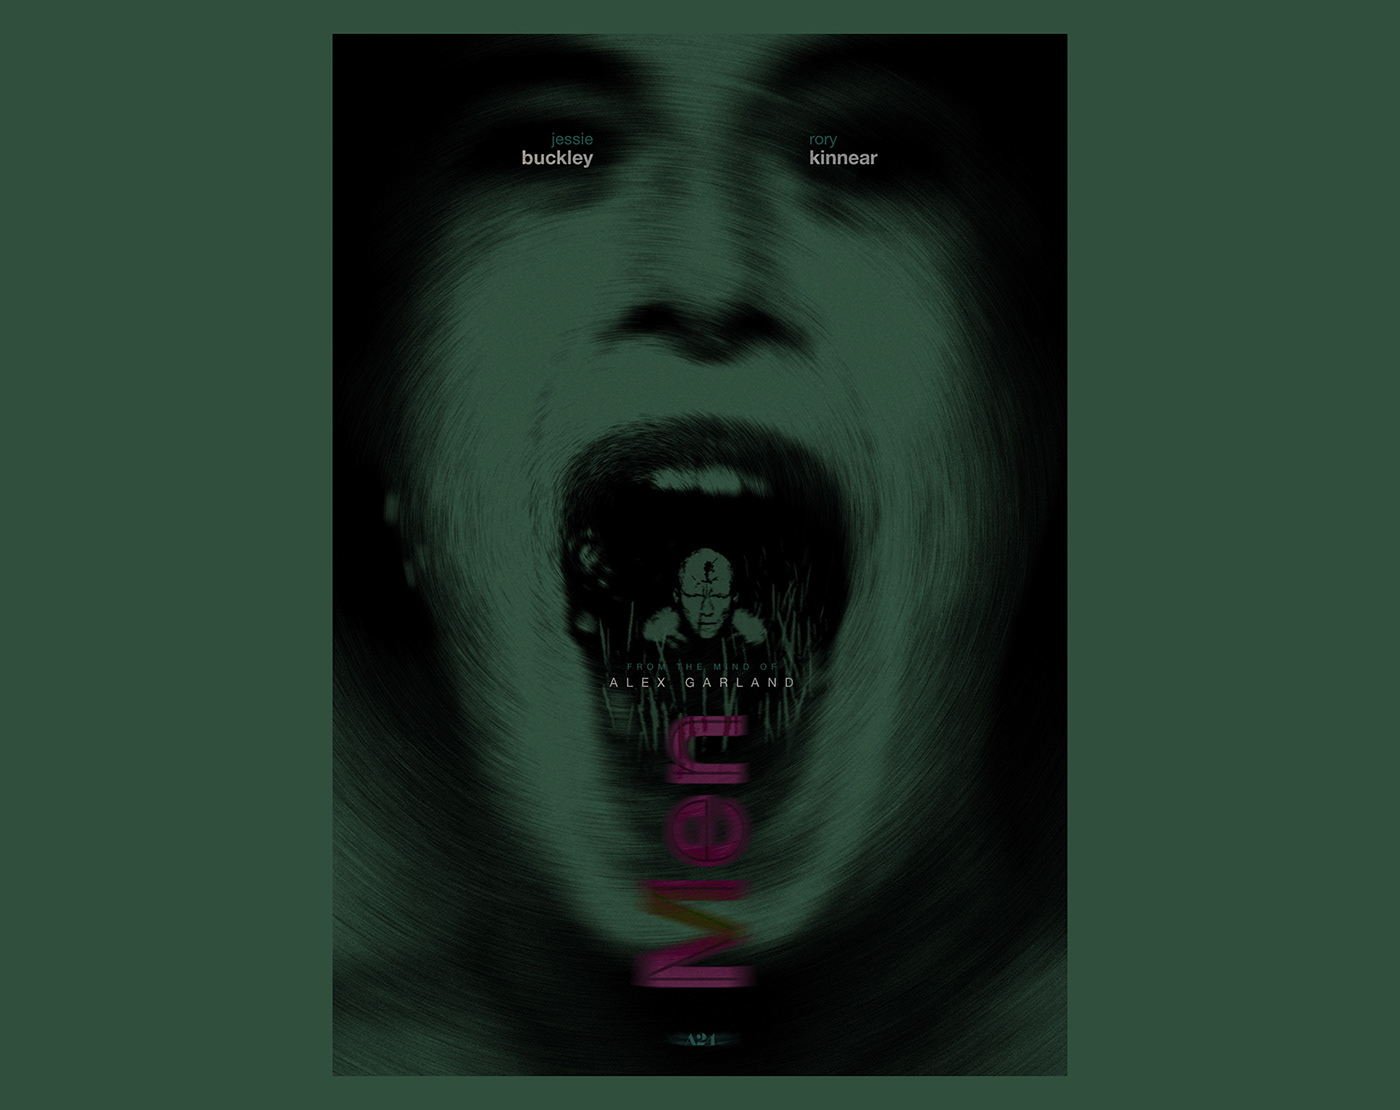 alex garland alternative poster artwork Jessie Buckley men movie movie poster poster Rory Kinnear thriller